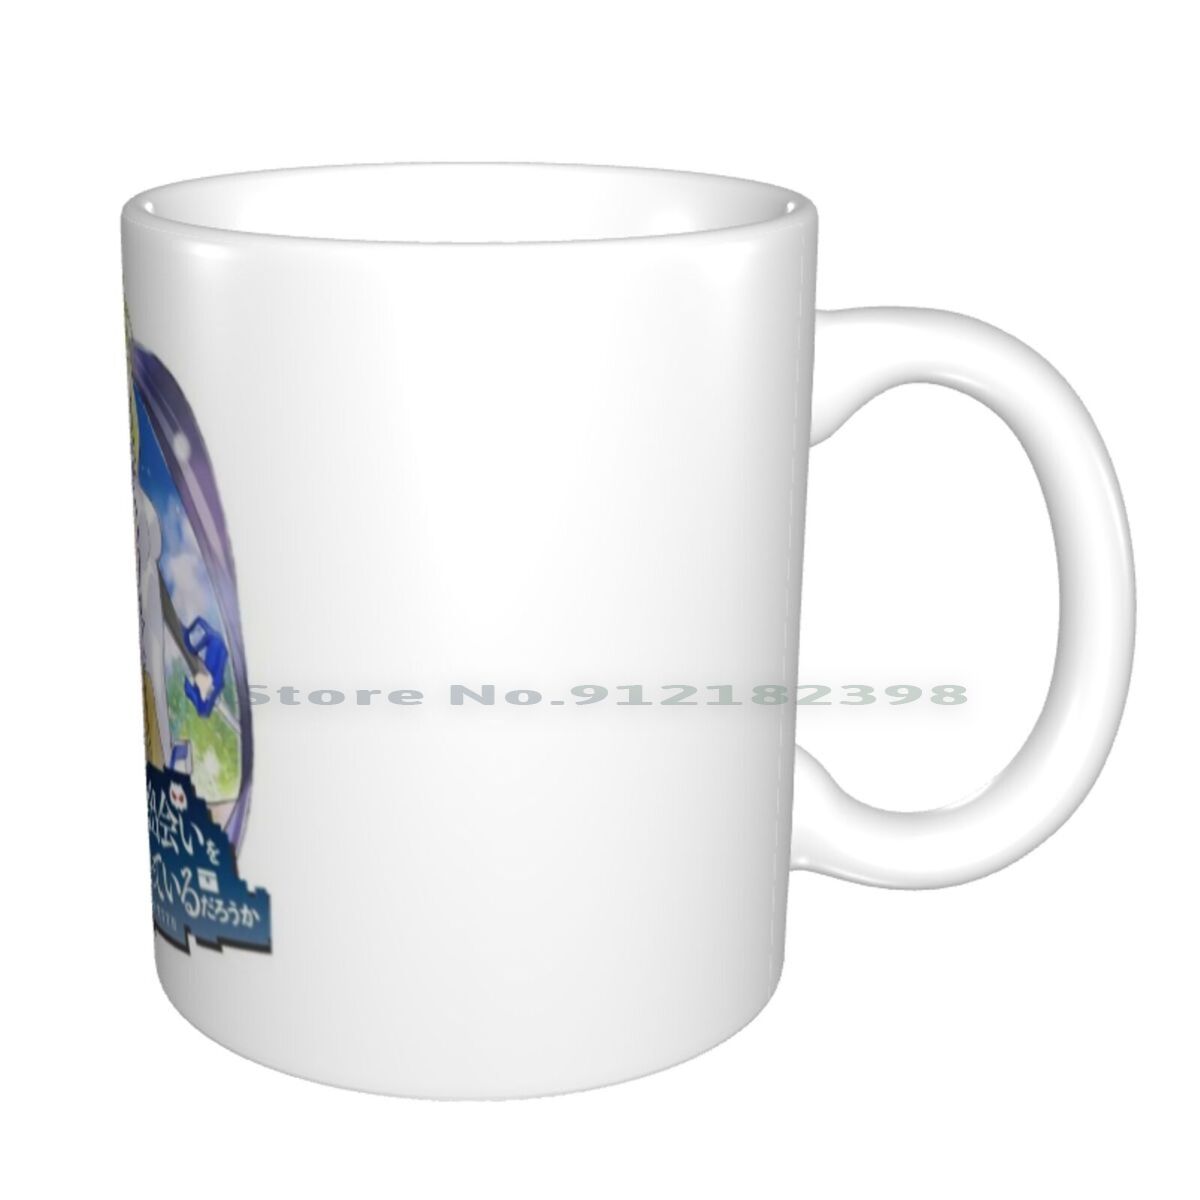 DanMachi – Different Characters Themed Ceramic Mugs (20+ Designs) Mugs